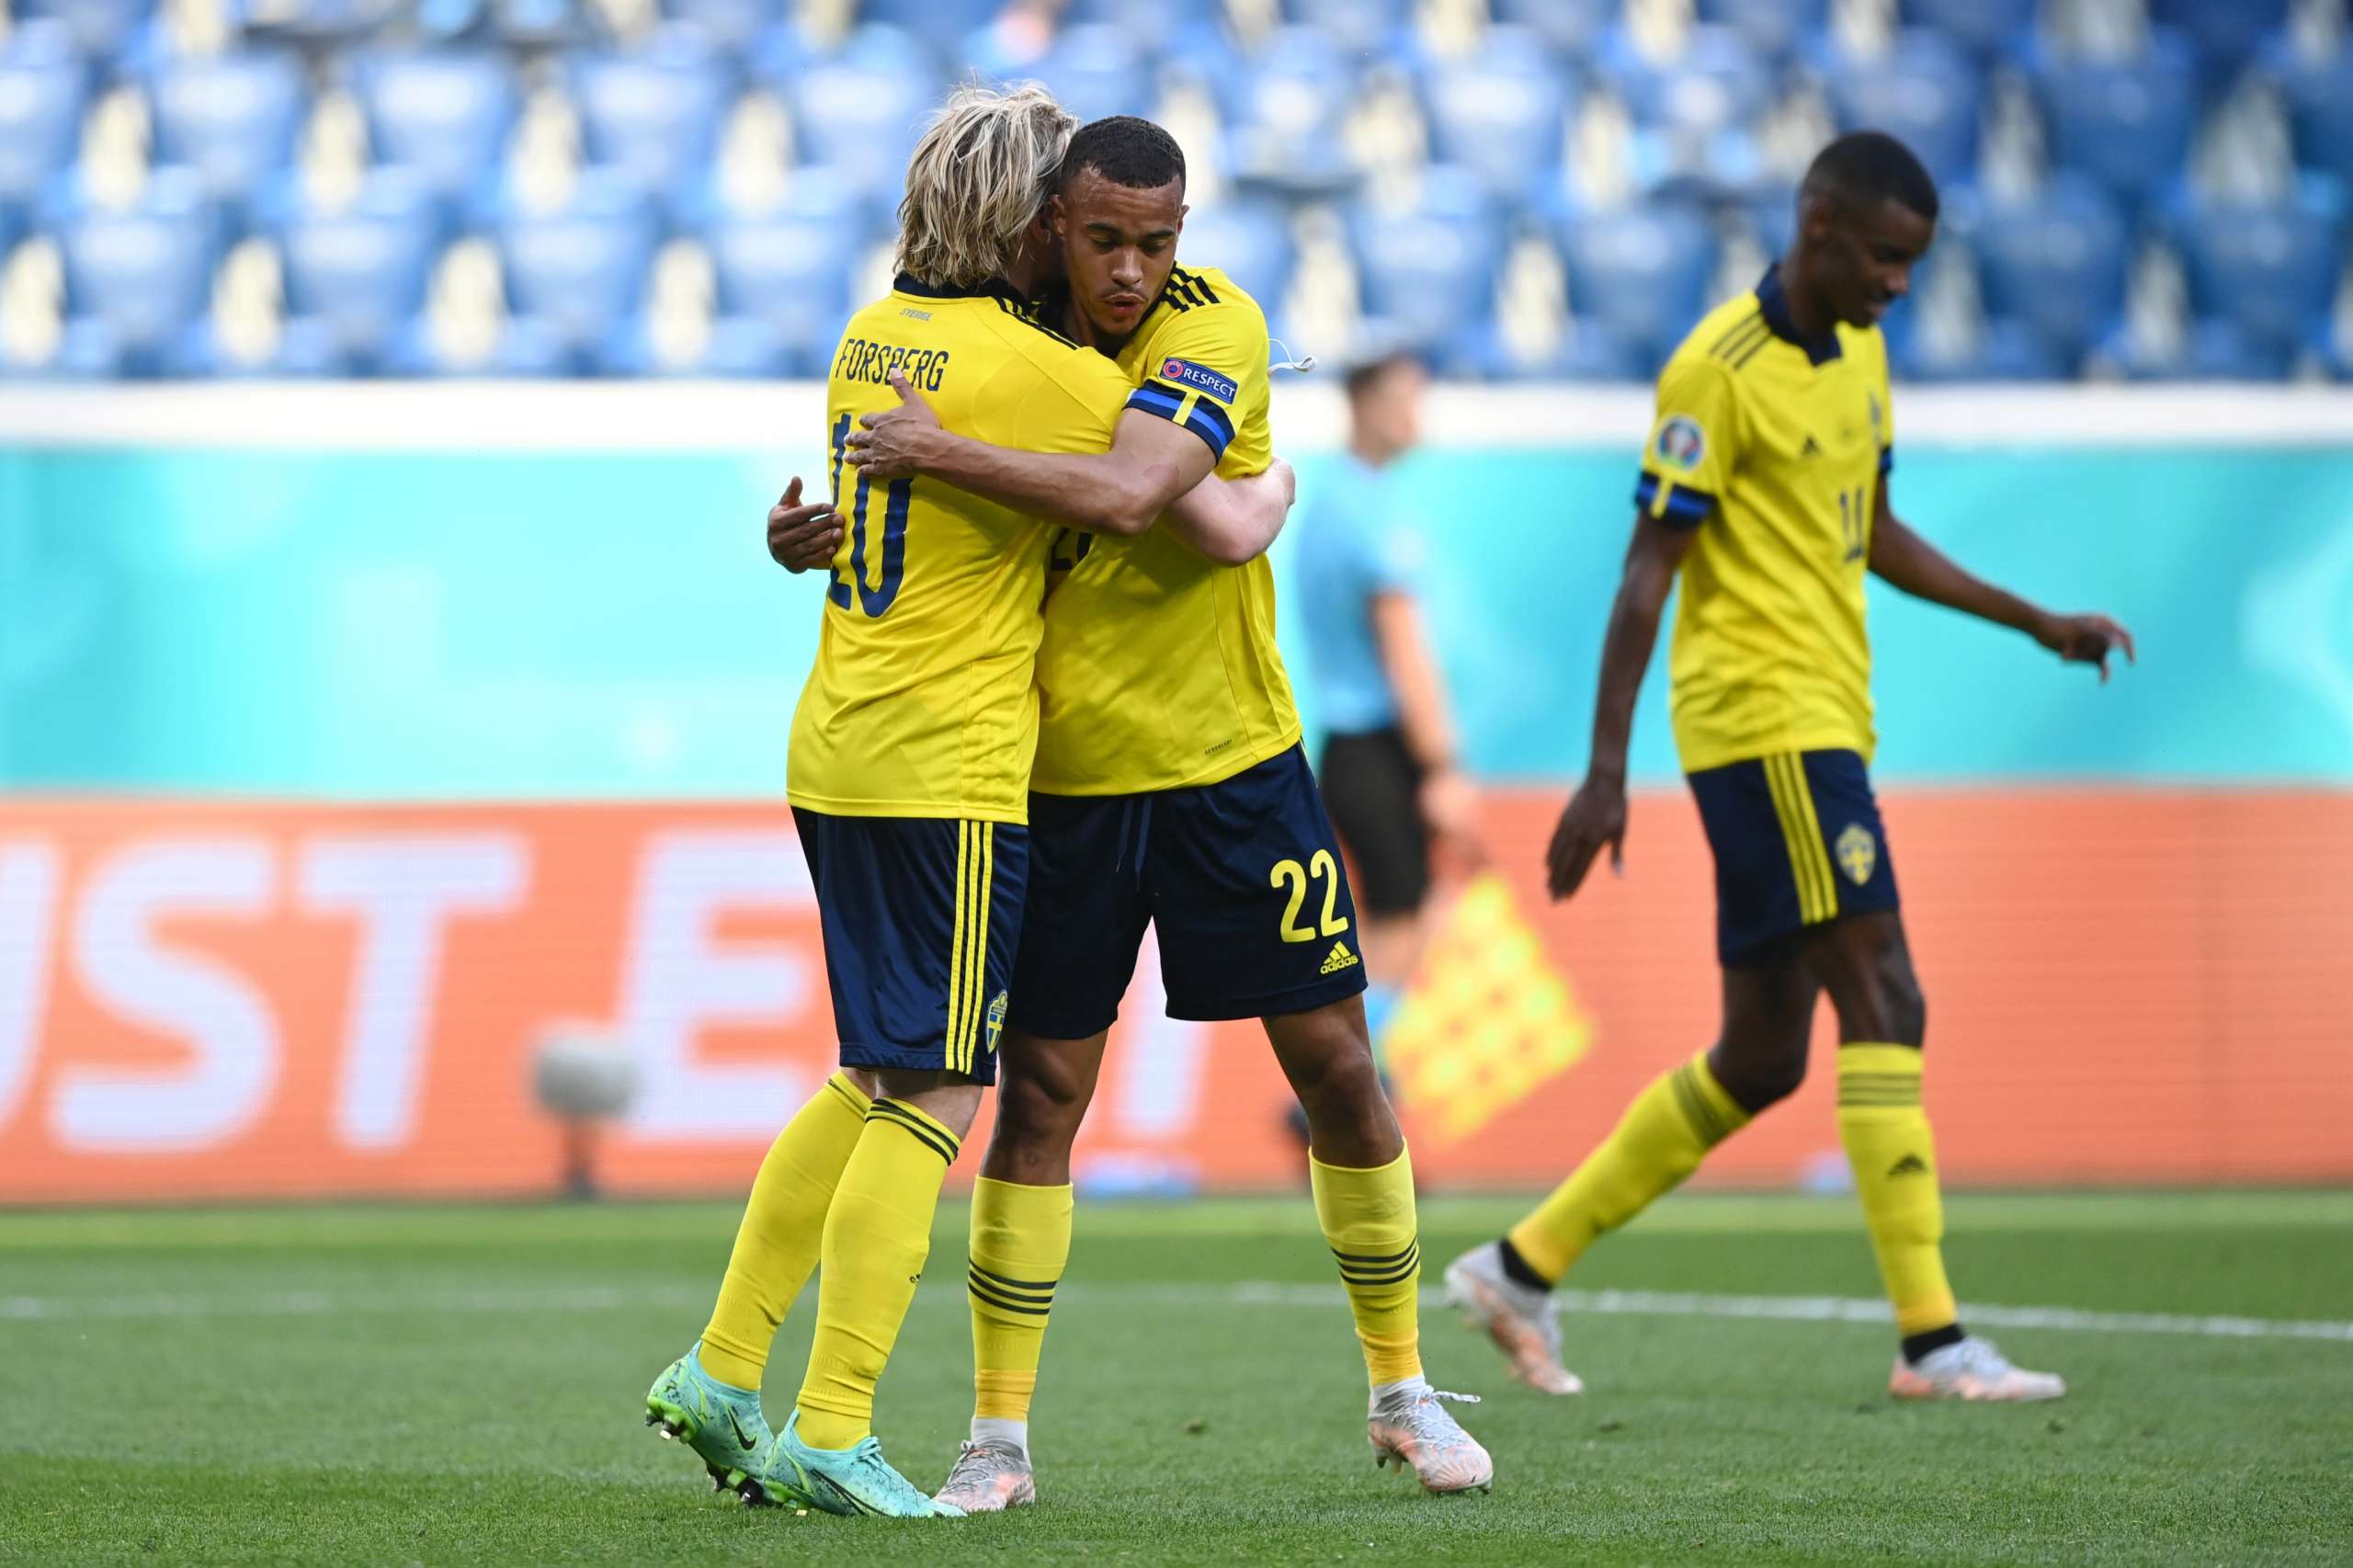 EUROCOPA: Suécia derrota a Eslováquia por 1 a 0 e assume a liderança do Grupo E